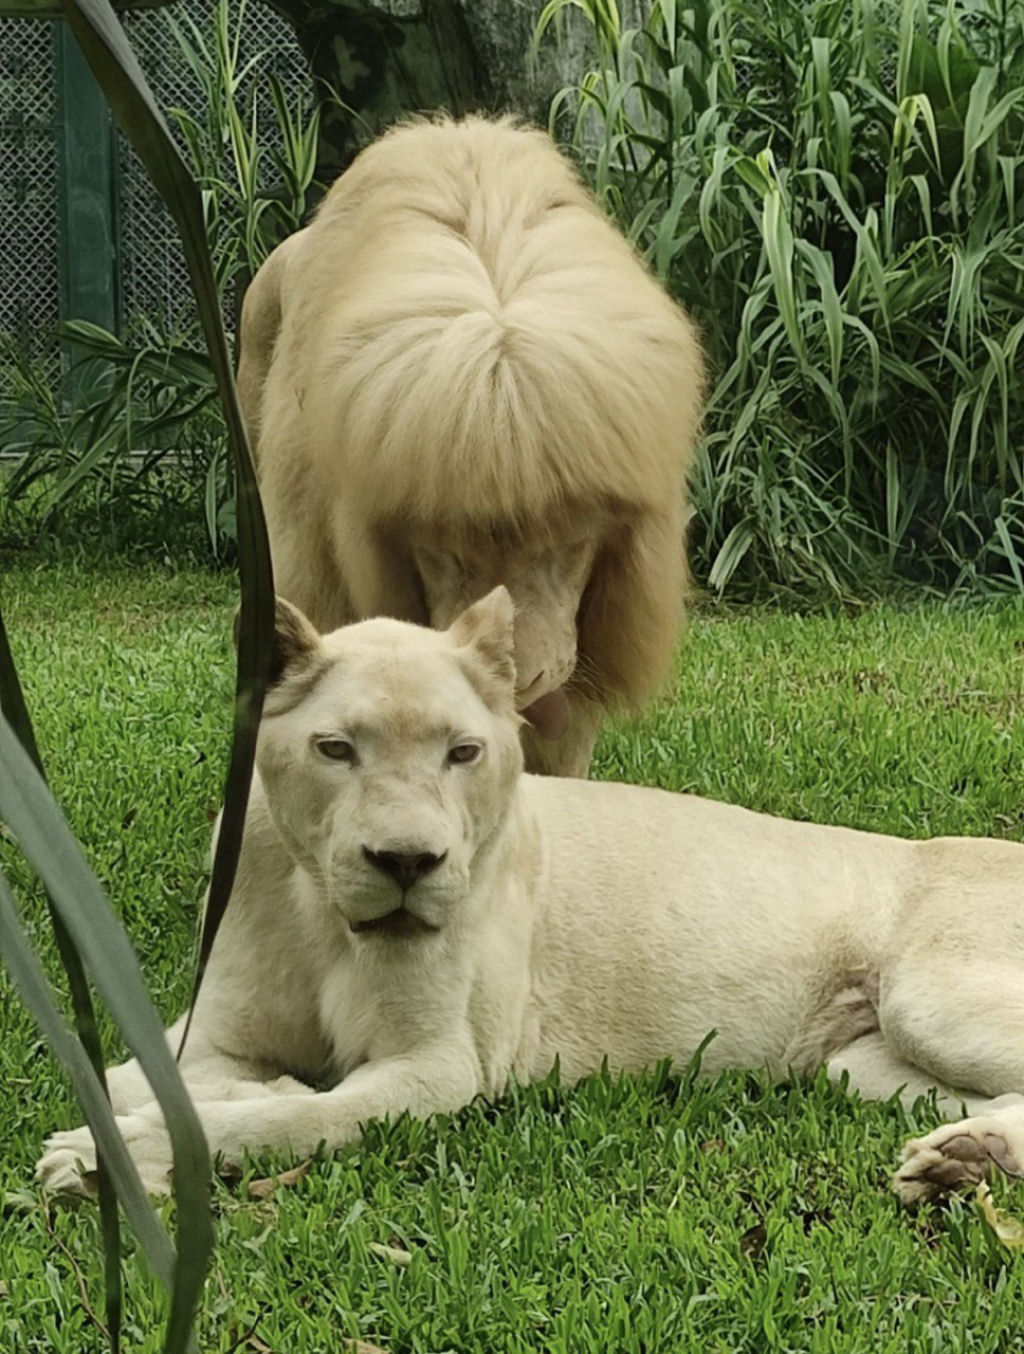 Franjinha reta: o peculiar estilo de um leão branco surpreende os visitantes de um zoo na China